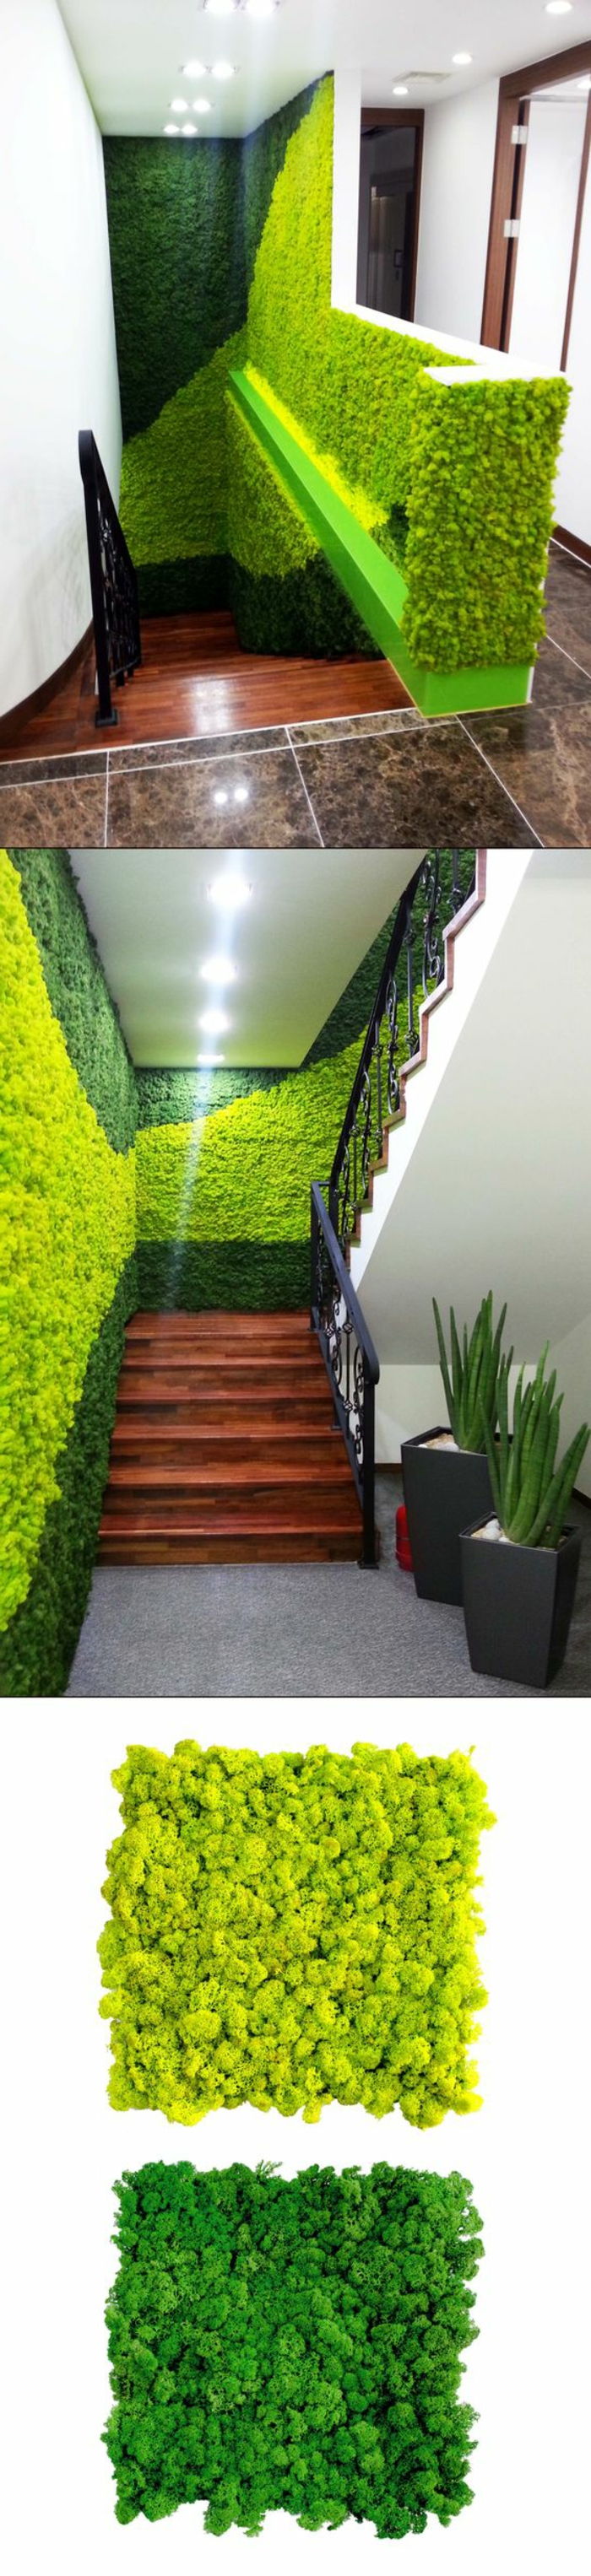 Kle veggene i trapp med mos